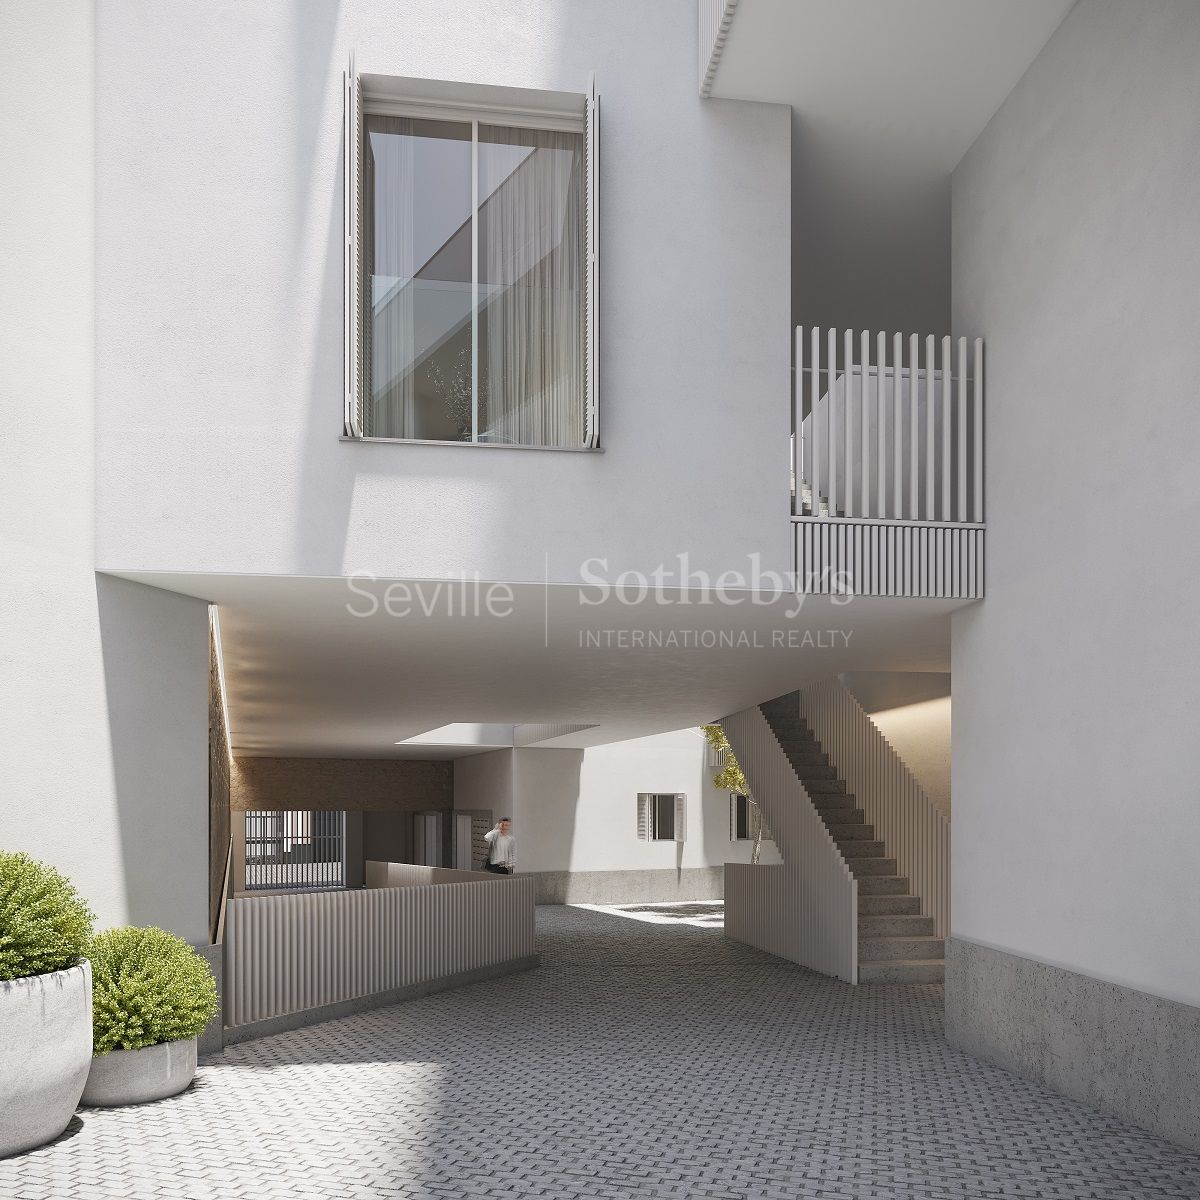 San Luis - Singular promoción de viviendas con garajes y trasteros en pleno centro de Sevilla